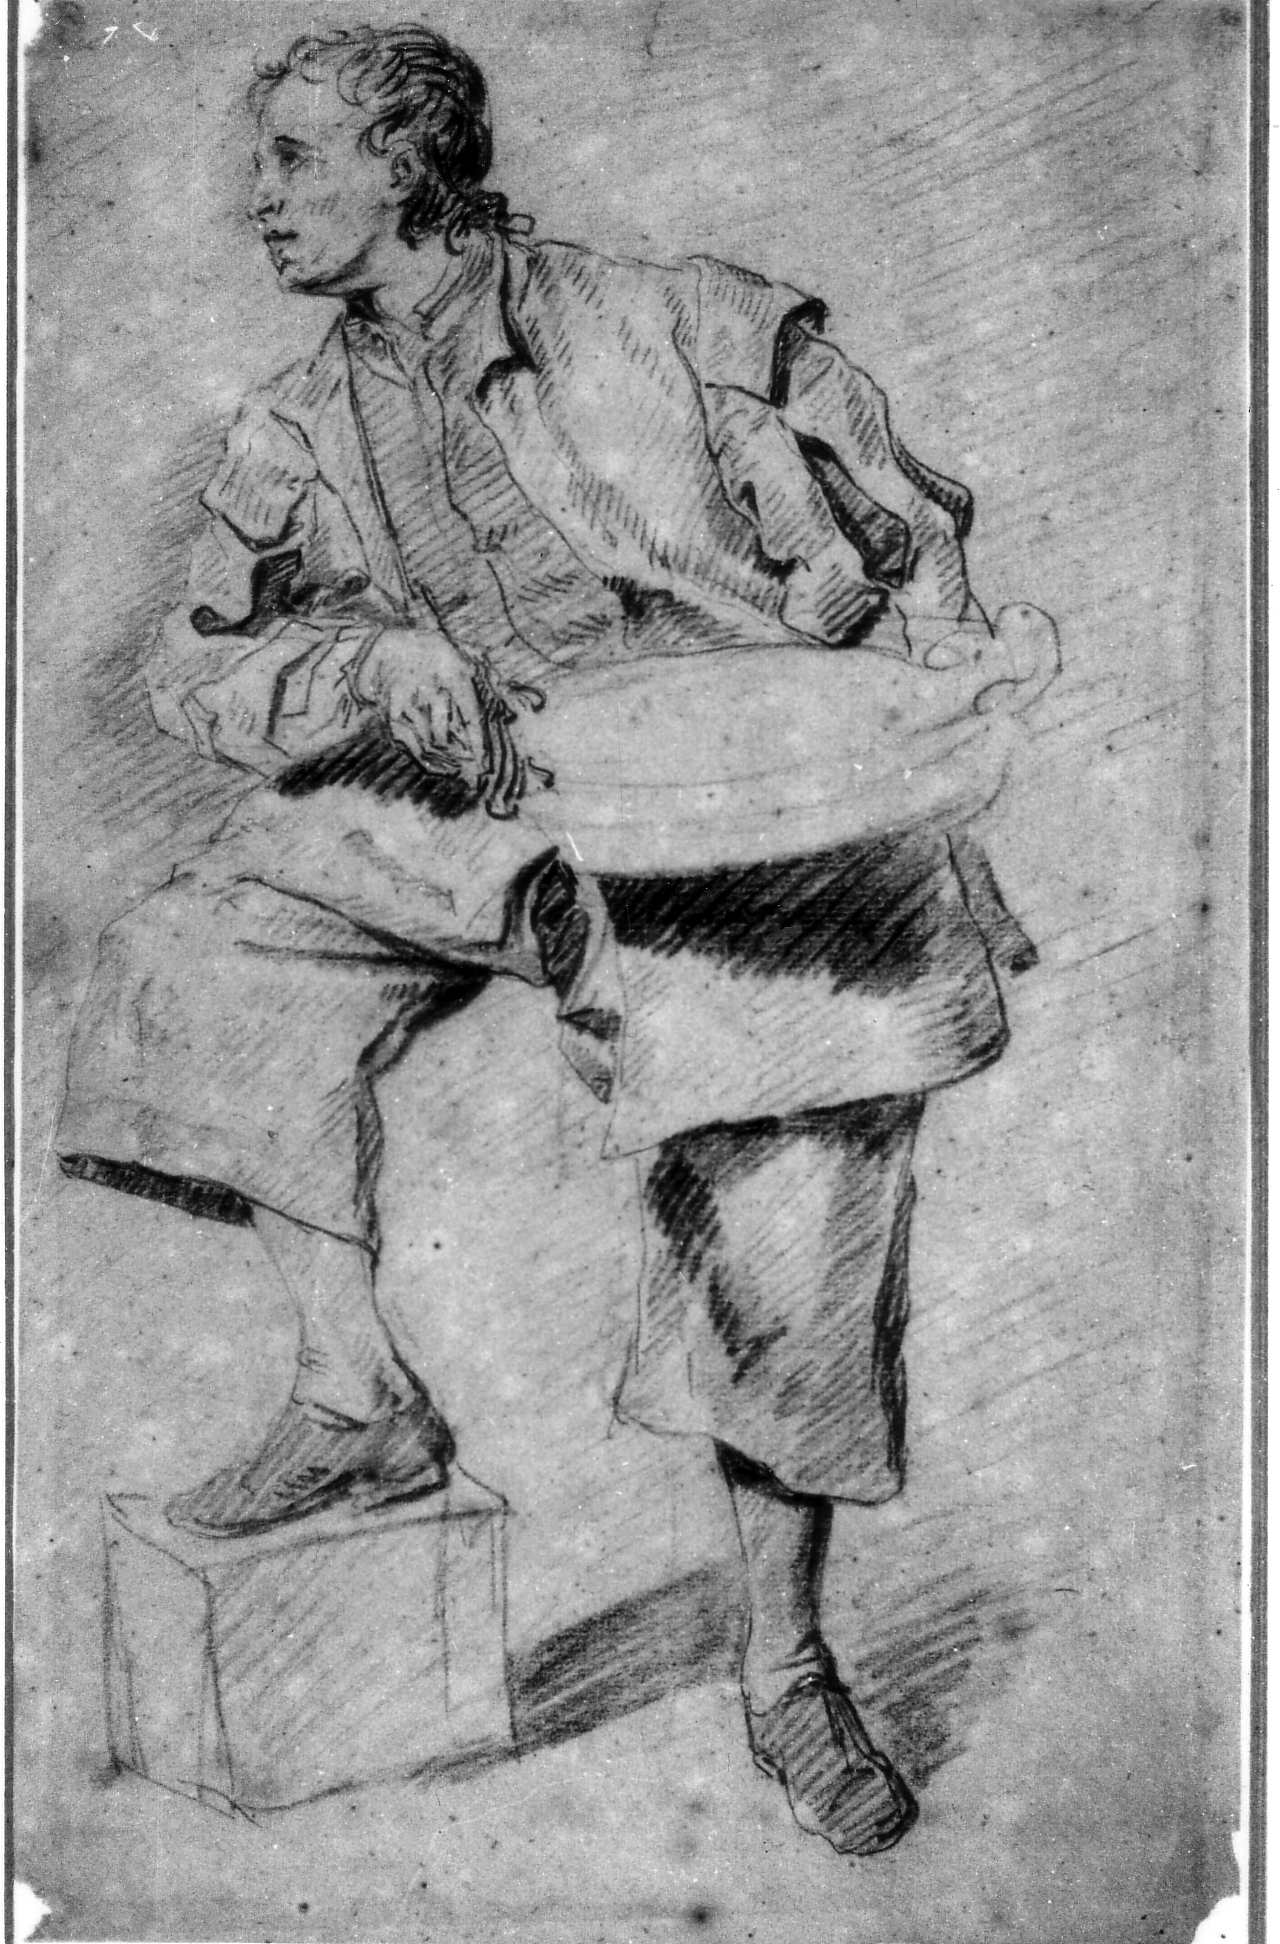 6. Pierre d’Angellis, Study of a Standing Man with a Bowl, 29 x 18 cm, black chalk. Rennes, Musée des Beaux-Arts.